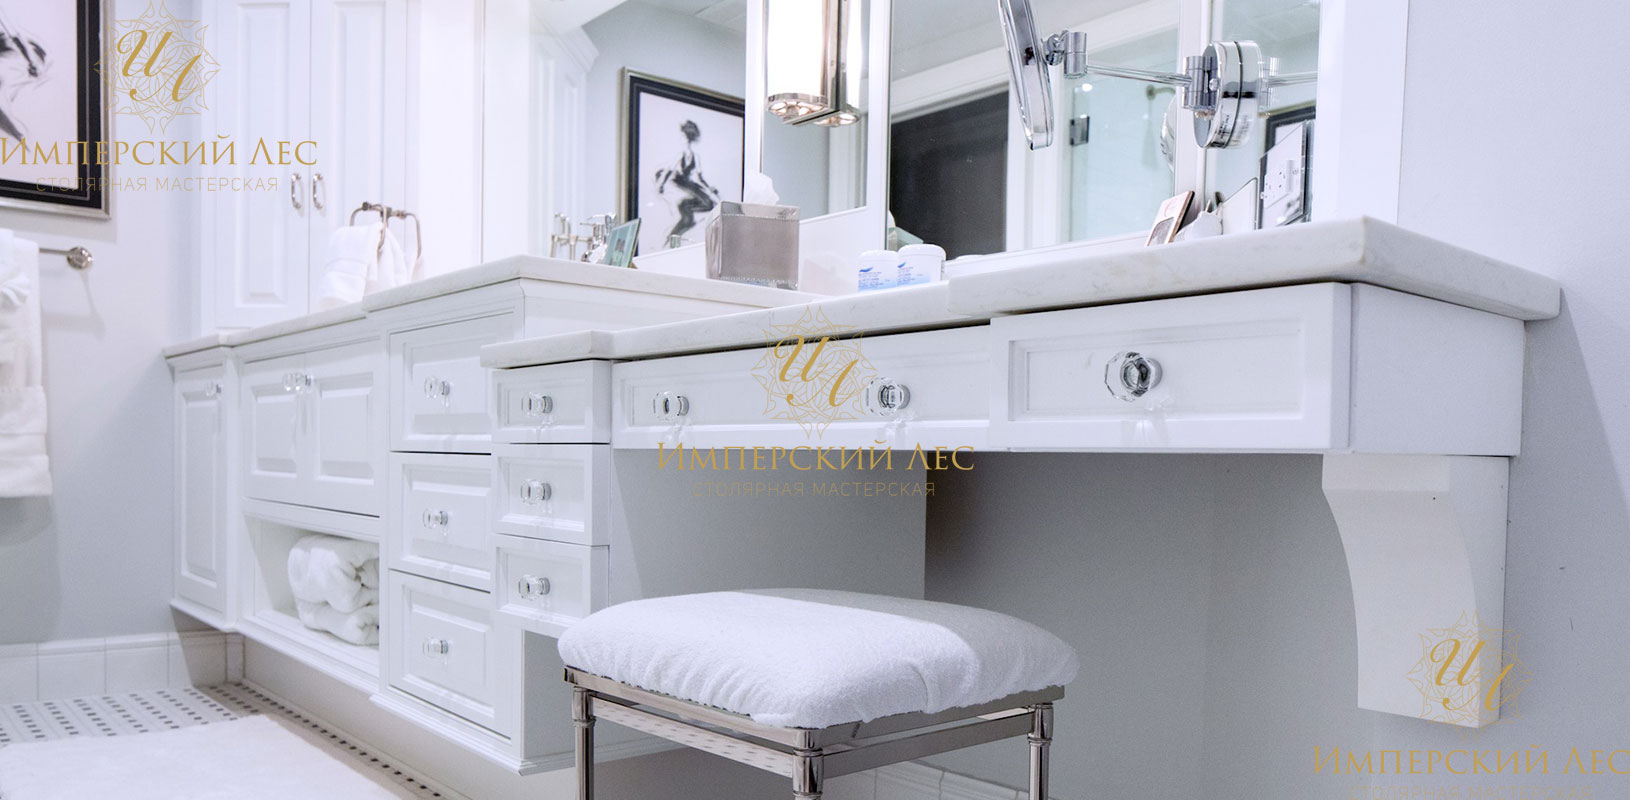 Белый мебельный гарнитур для ванной комнаты из влагостойкого натурального дерева